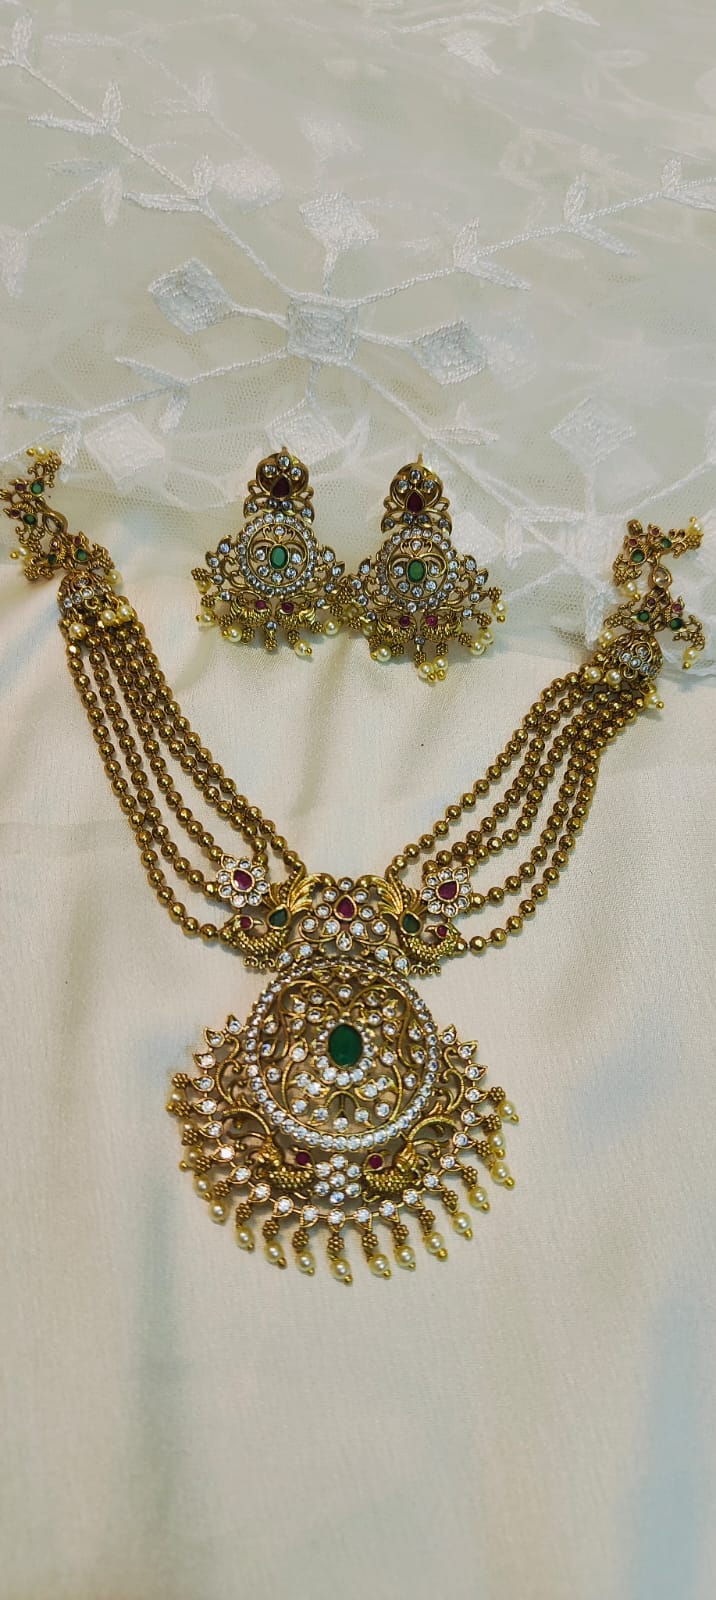 Golden antique finish necklace set